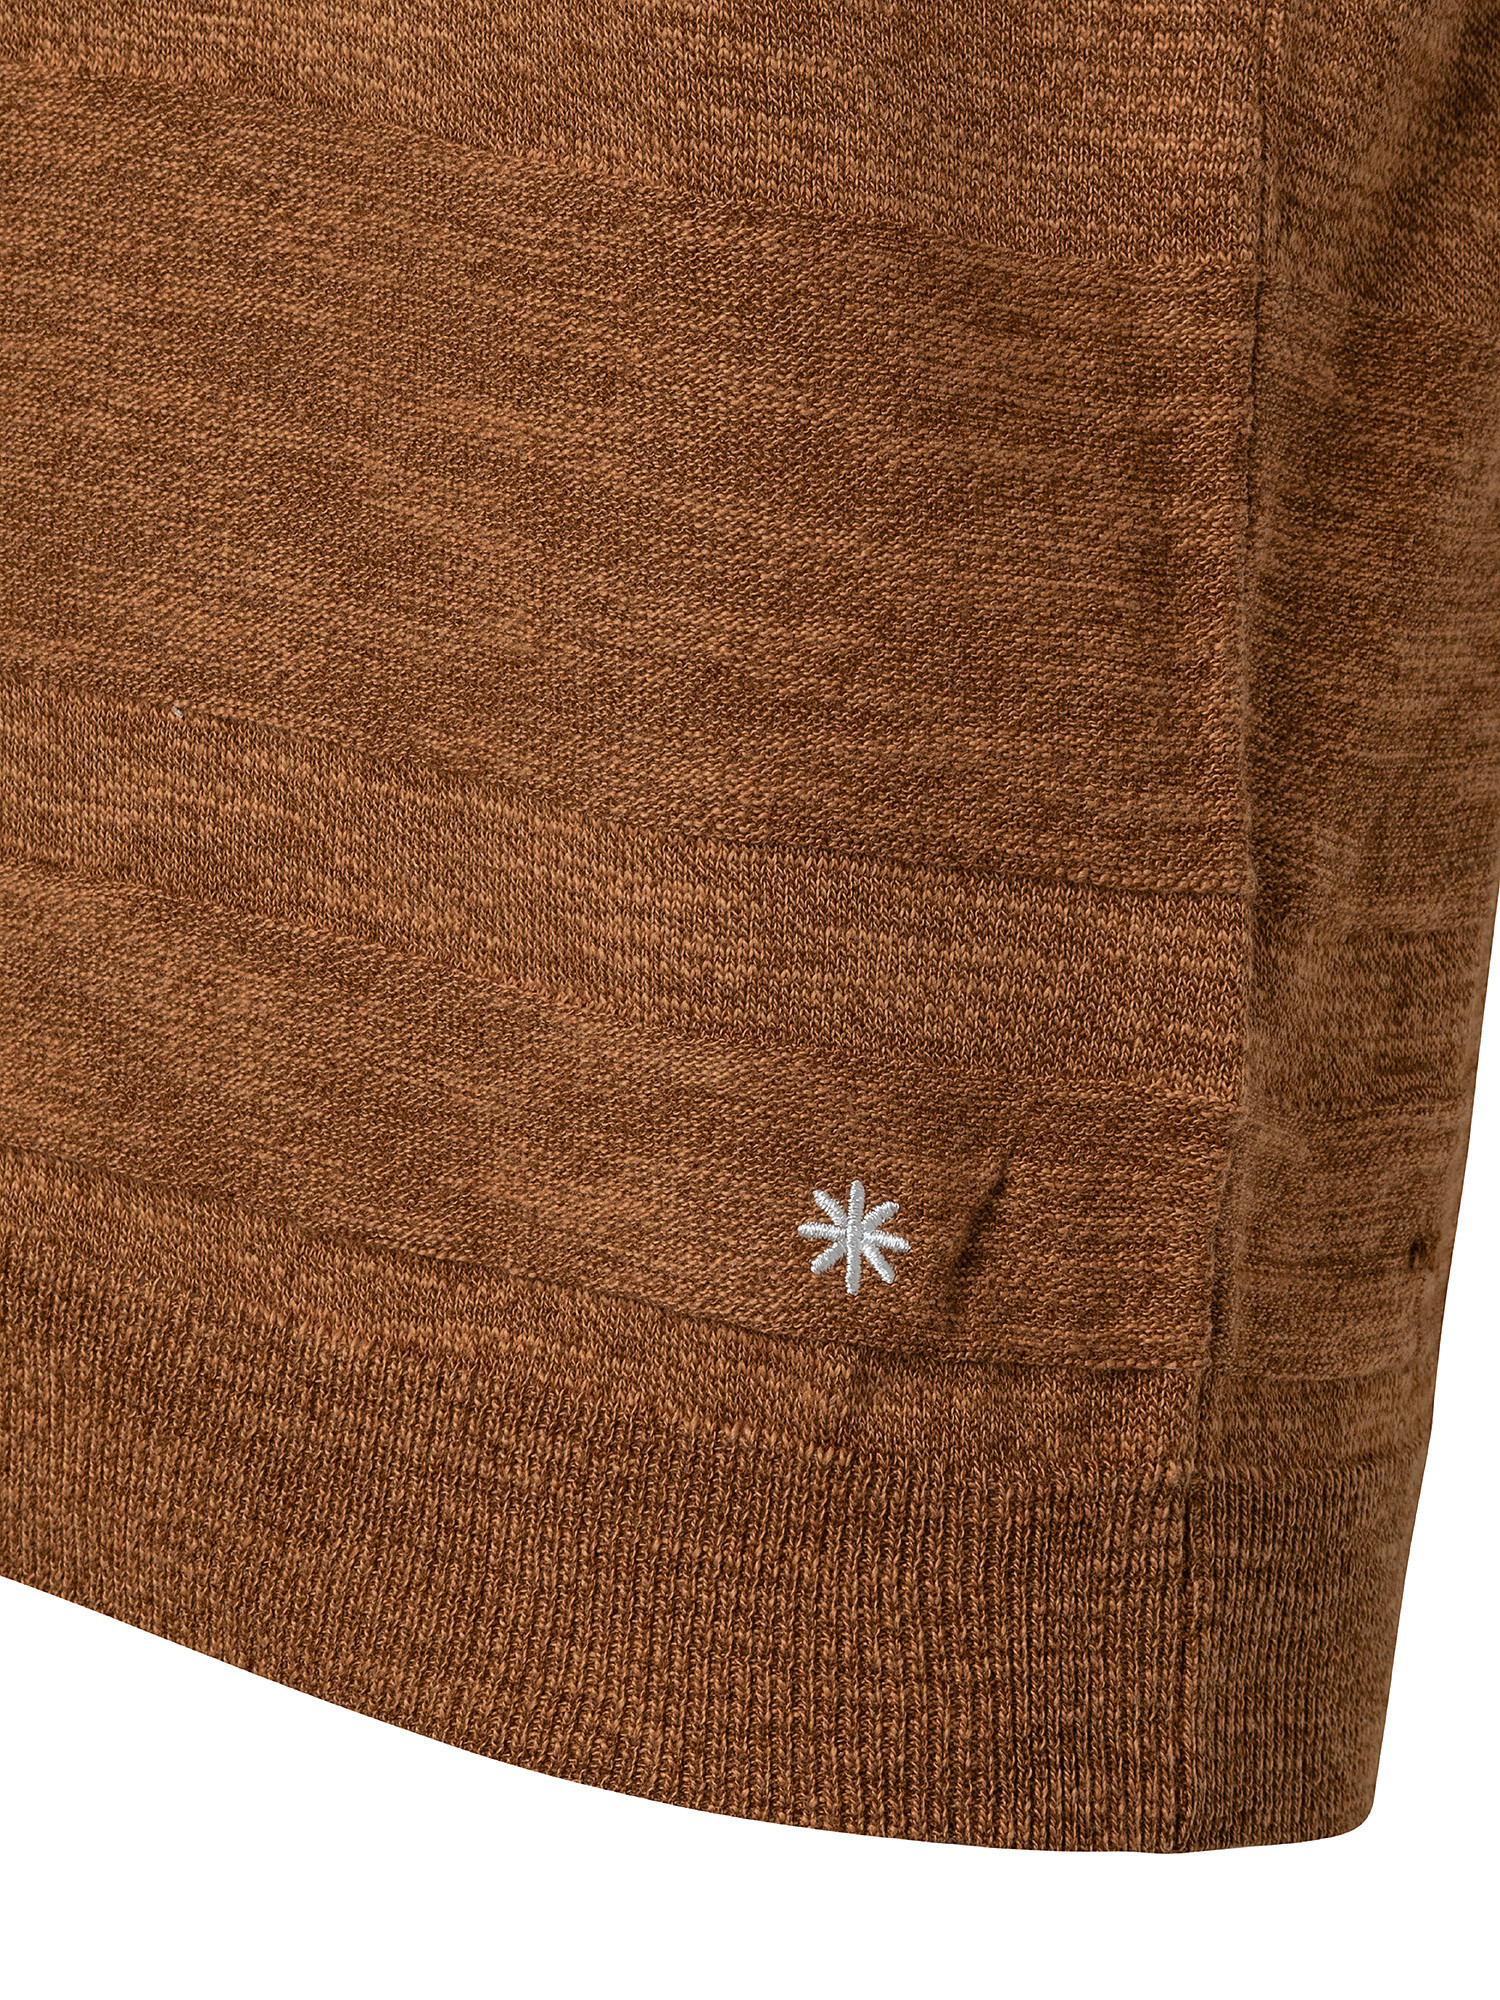 Polo in maglia misto cotone, Marrone, large image number 2